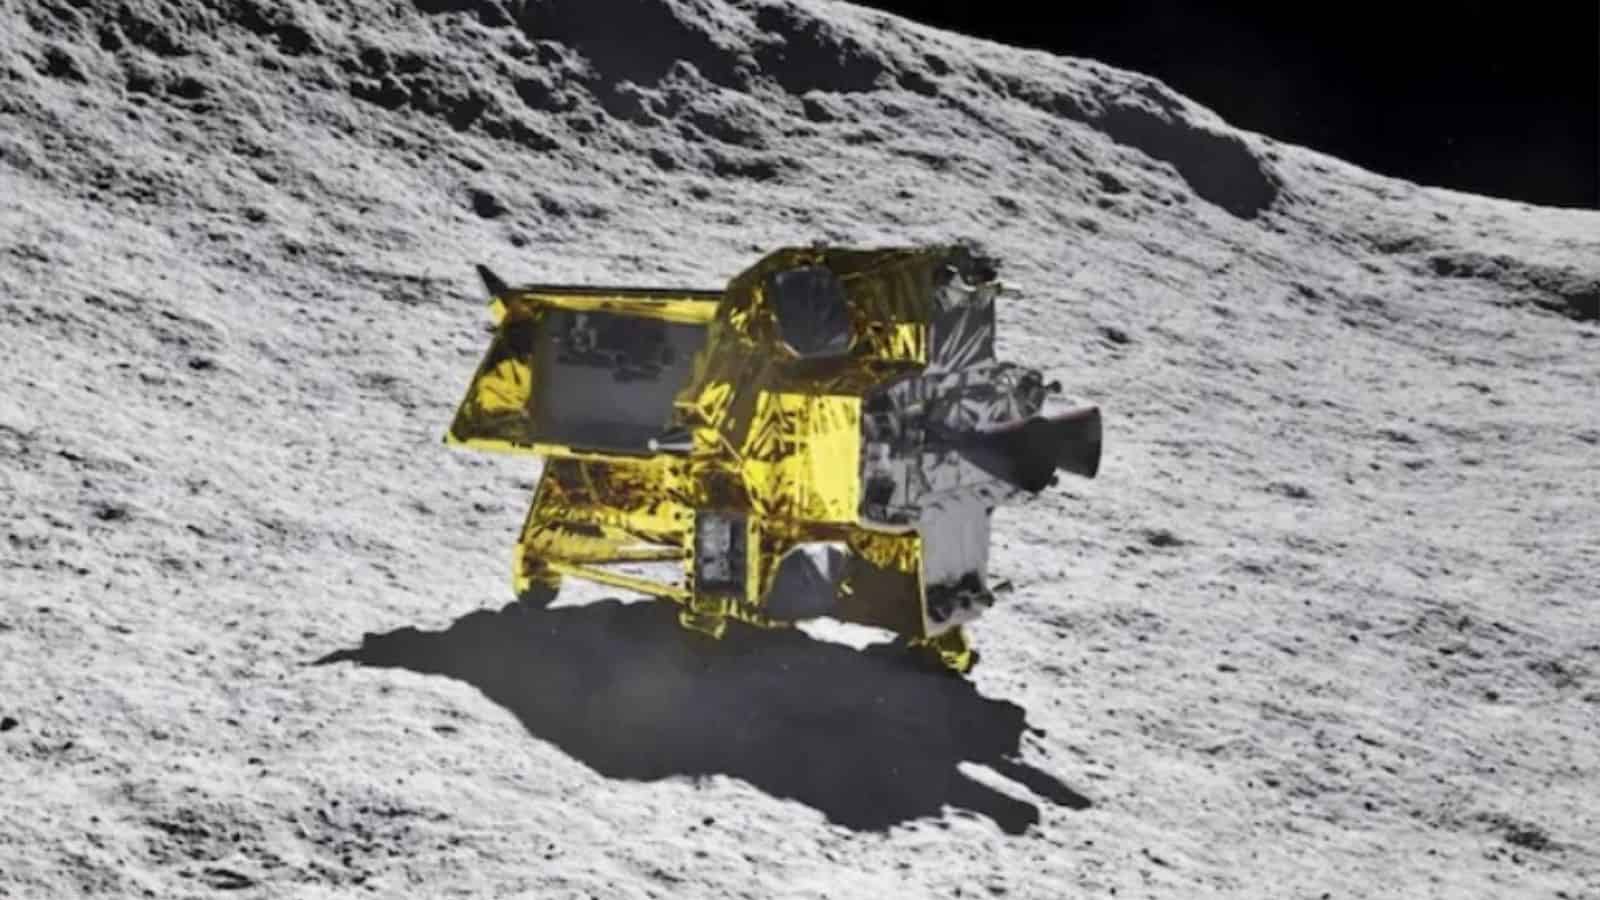 Il lander SLIM che dal Giappone è volato fino alla Luna, potrebbe essere riattivato a breve